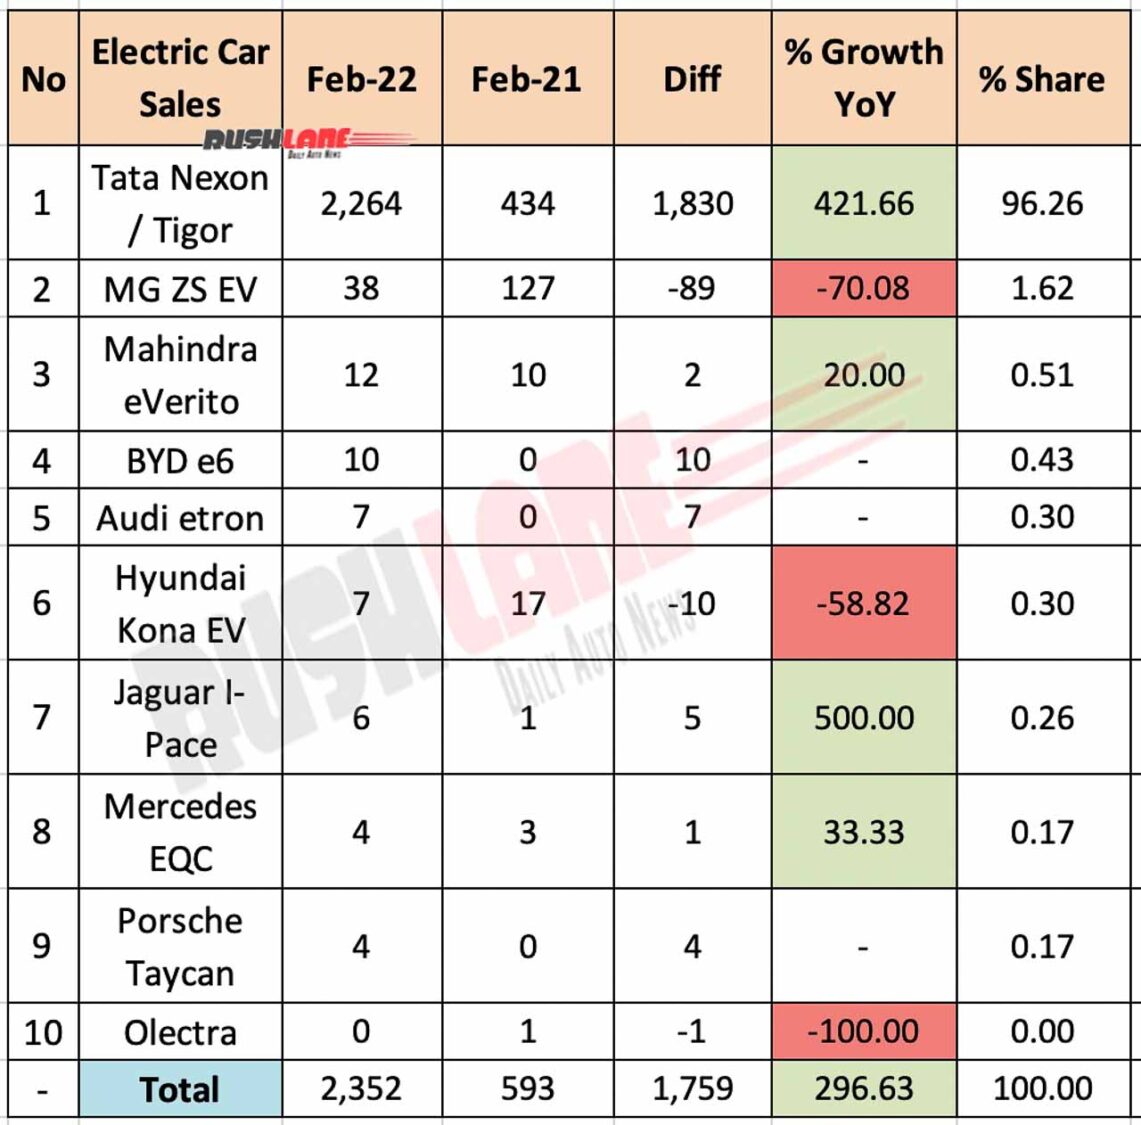 Electric Car Sales Feb 2022 vs Feb 2021 (YoY)